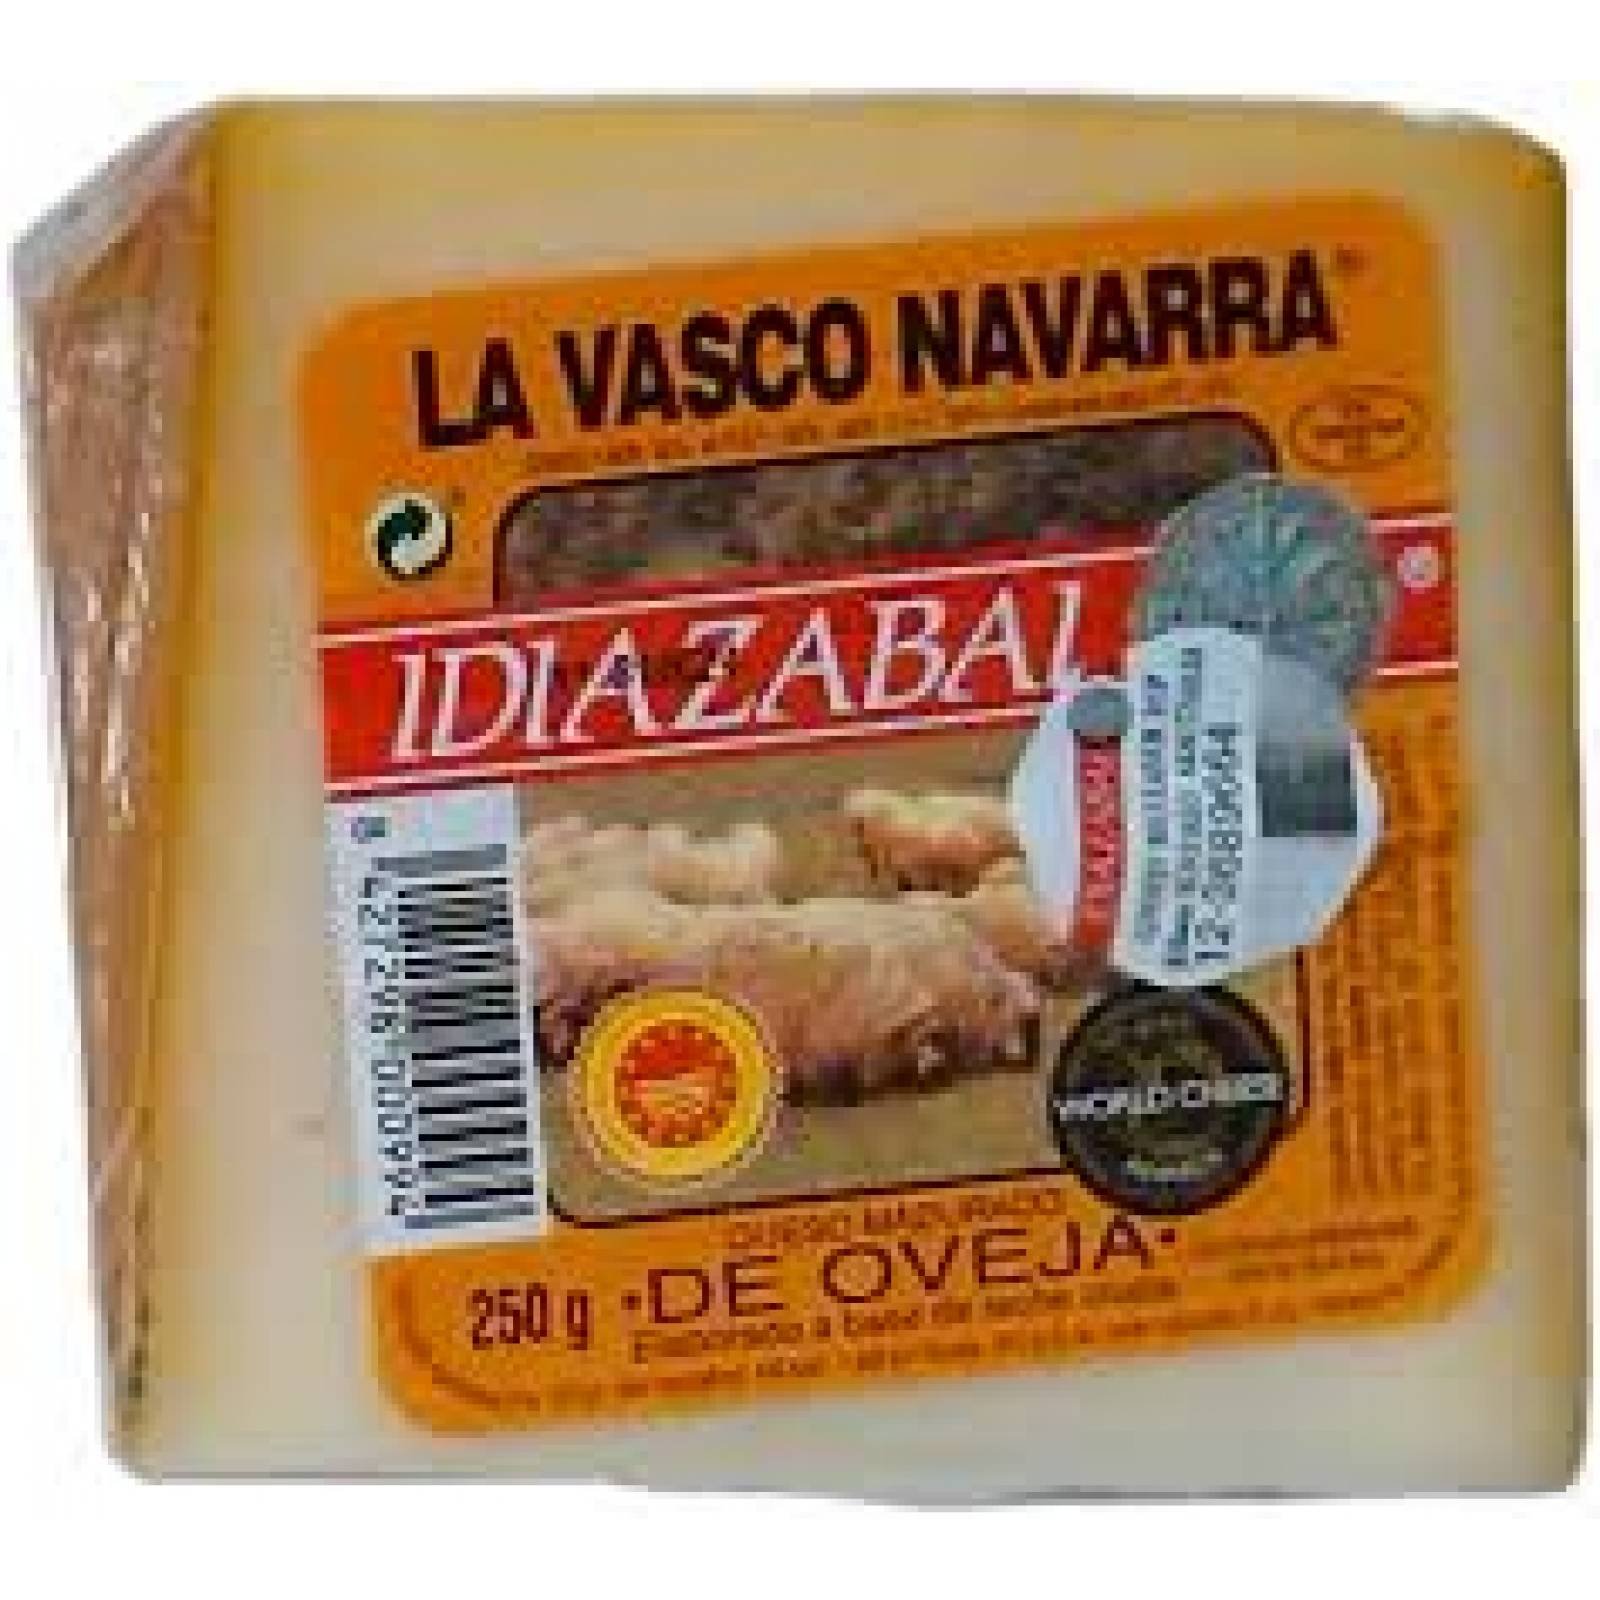 Idiazabal Queso La Vasco Navarra Ahumado DO 250 gr